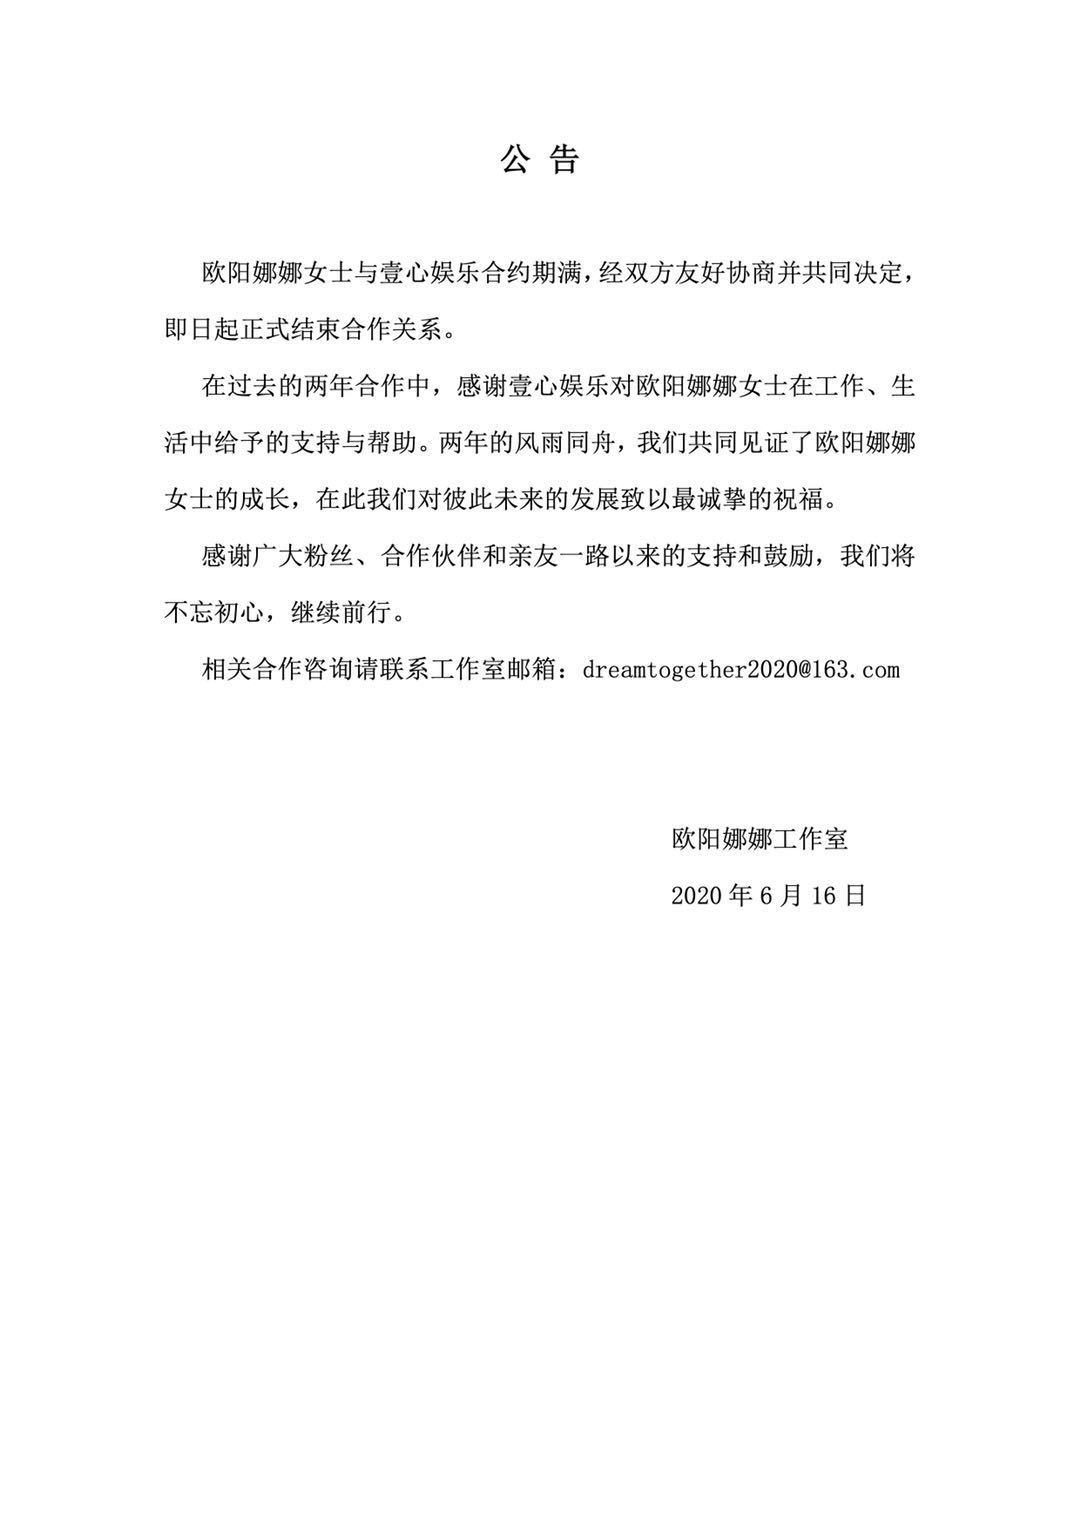 欧阳娜娜与壹心娱乐两年合约期满，正式解除合作关系 - 娱乐 - 新京报网